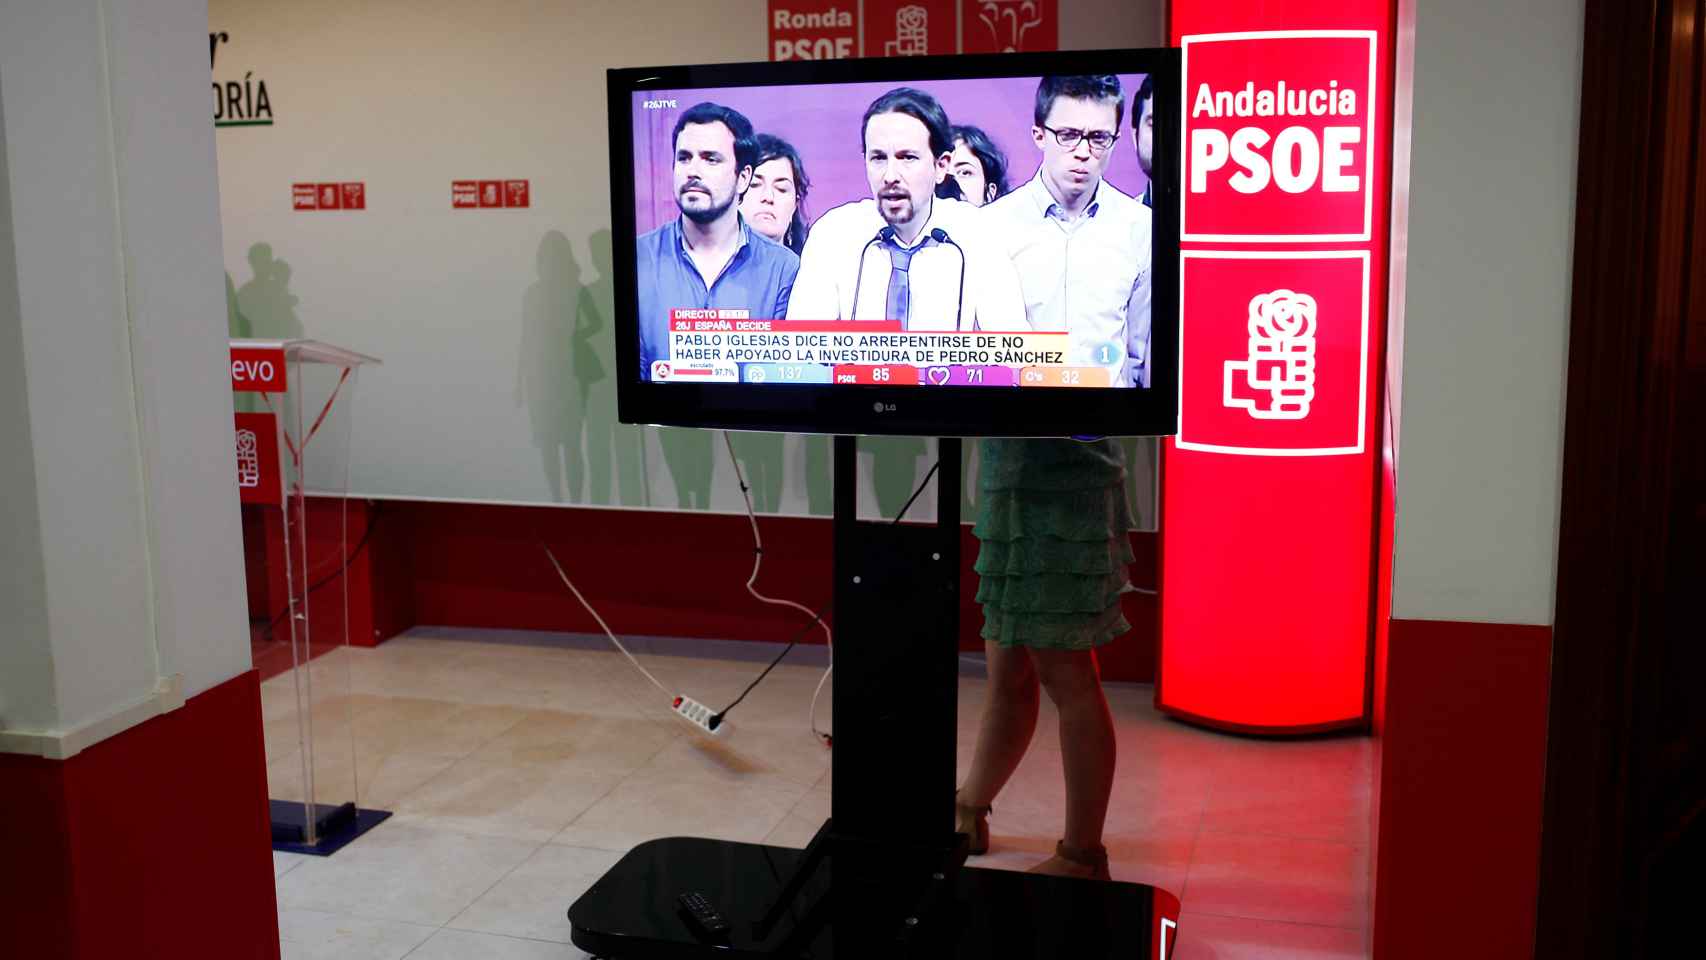 El discurso de Pablo Iglesias en un televisor en la sede del PSOE en Ronda.